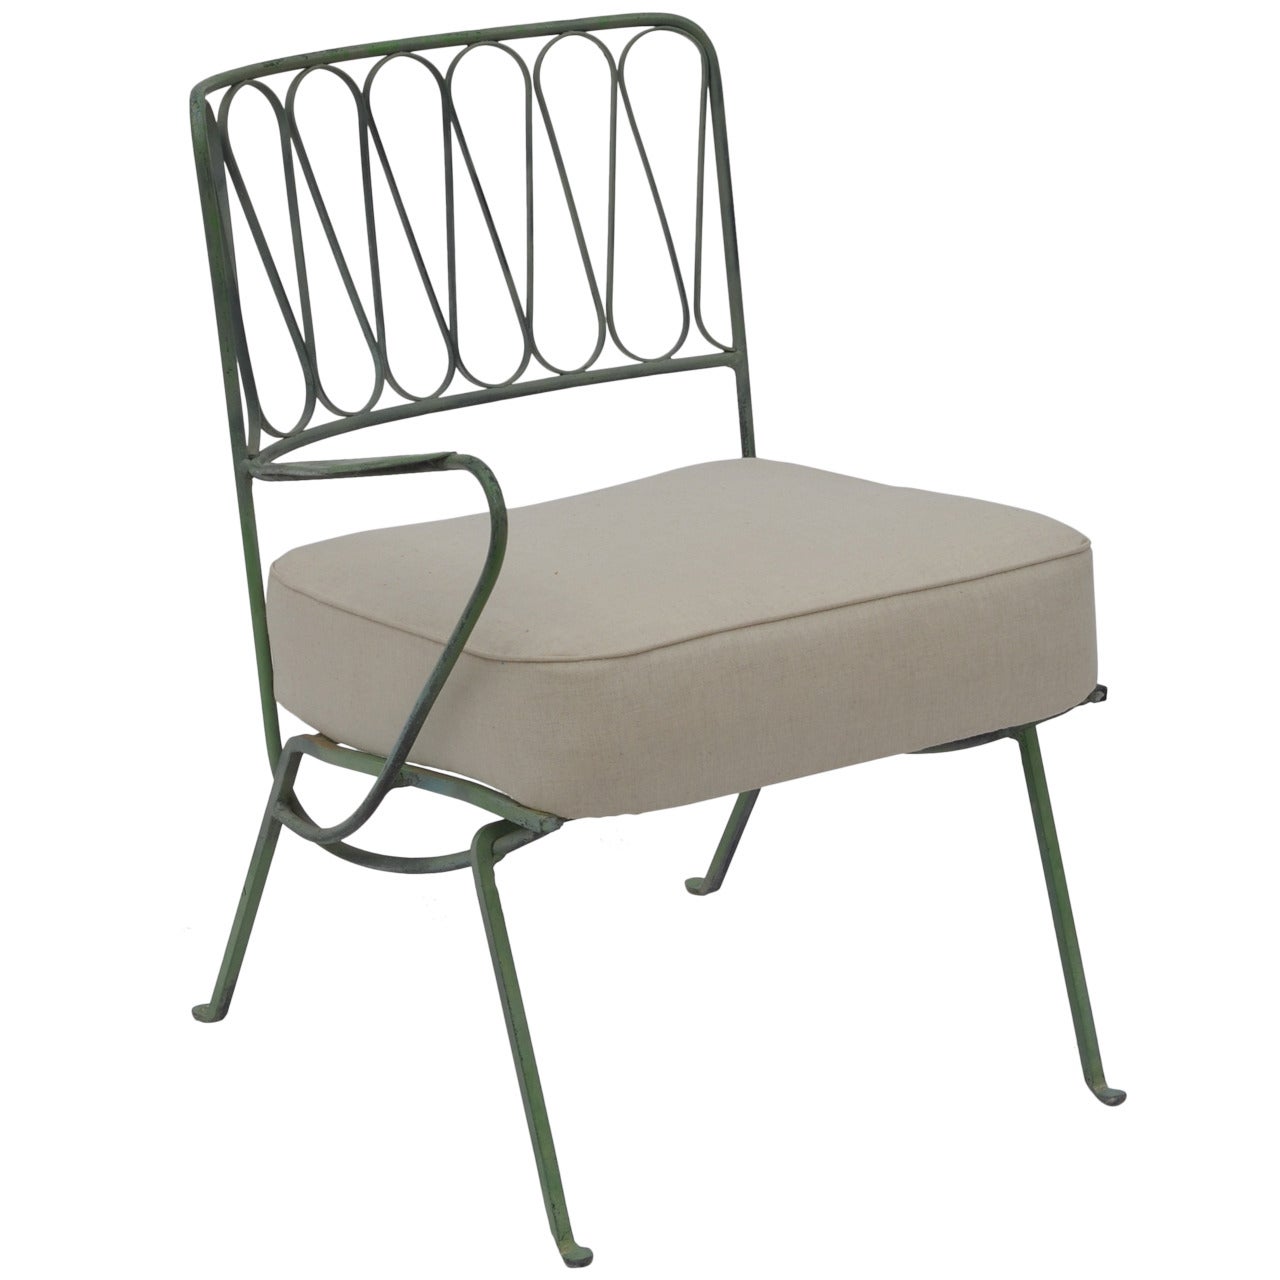 Since Arm Corner Indoor Outdoor Chair by Salterini